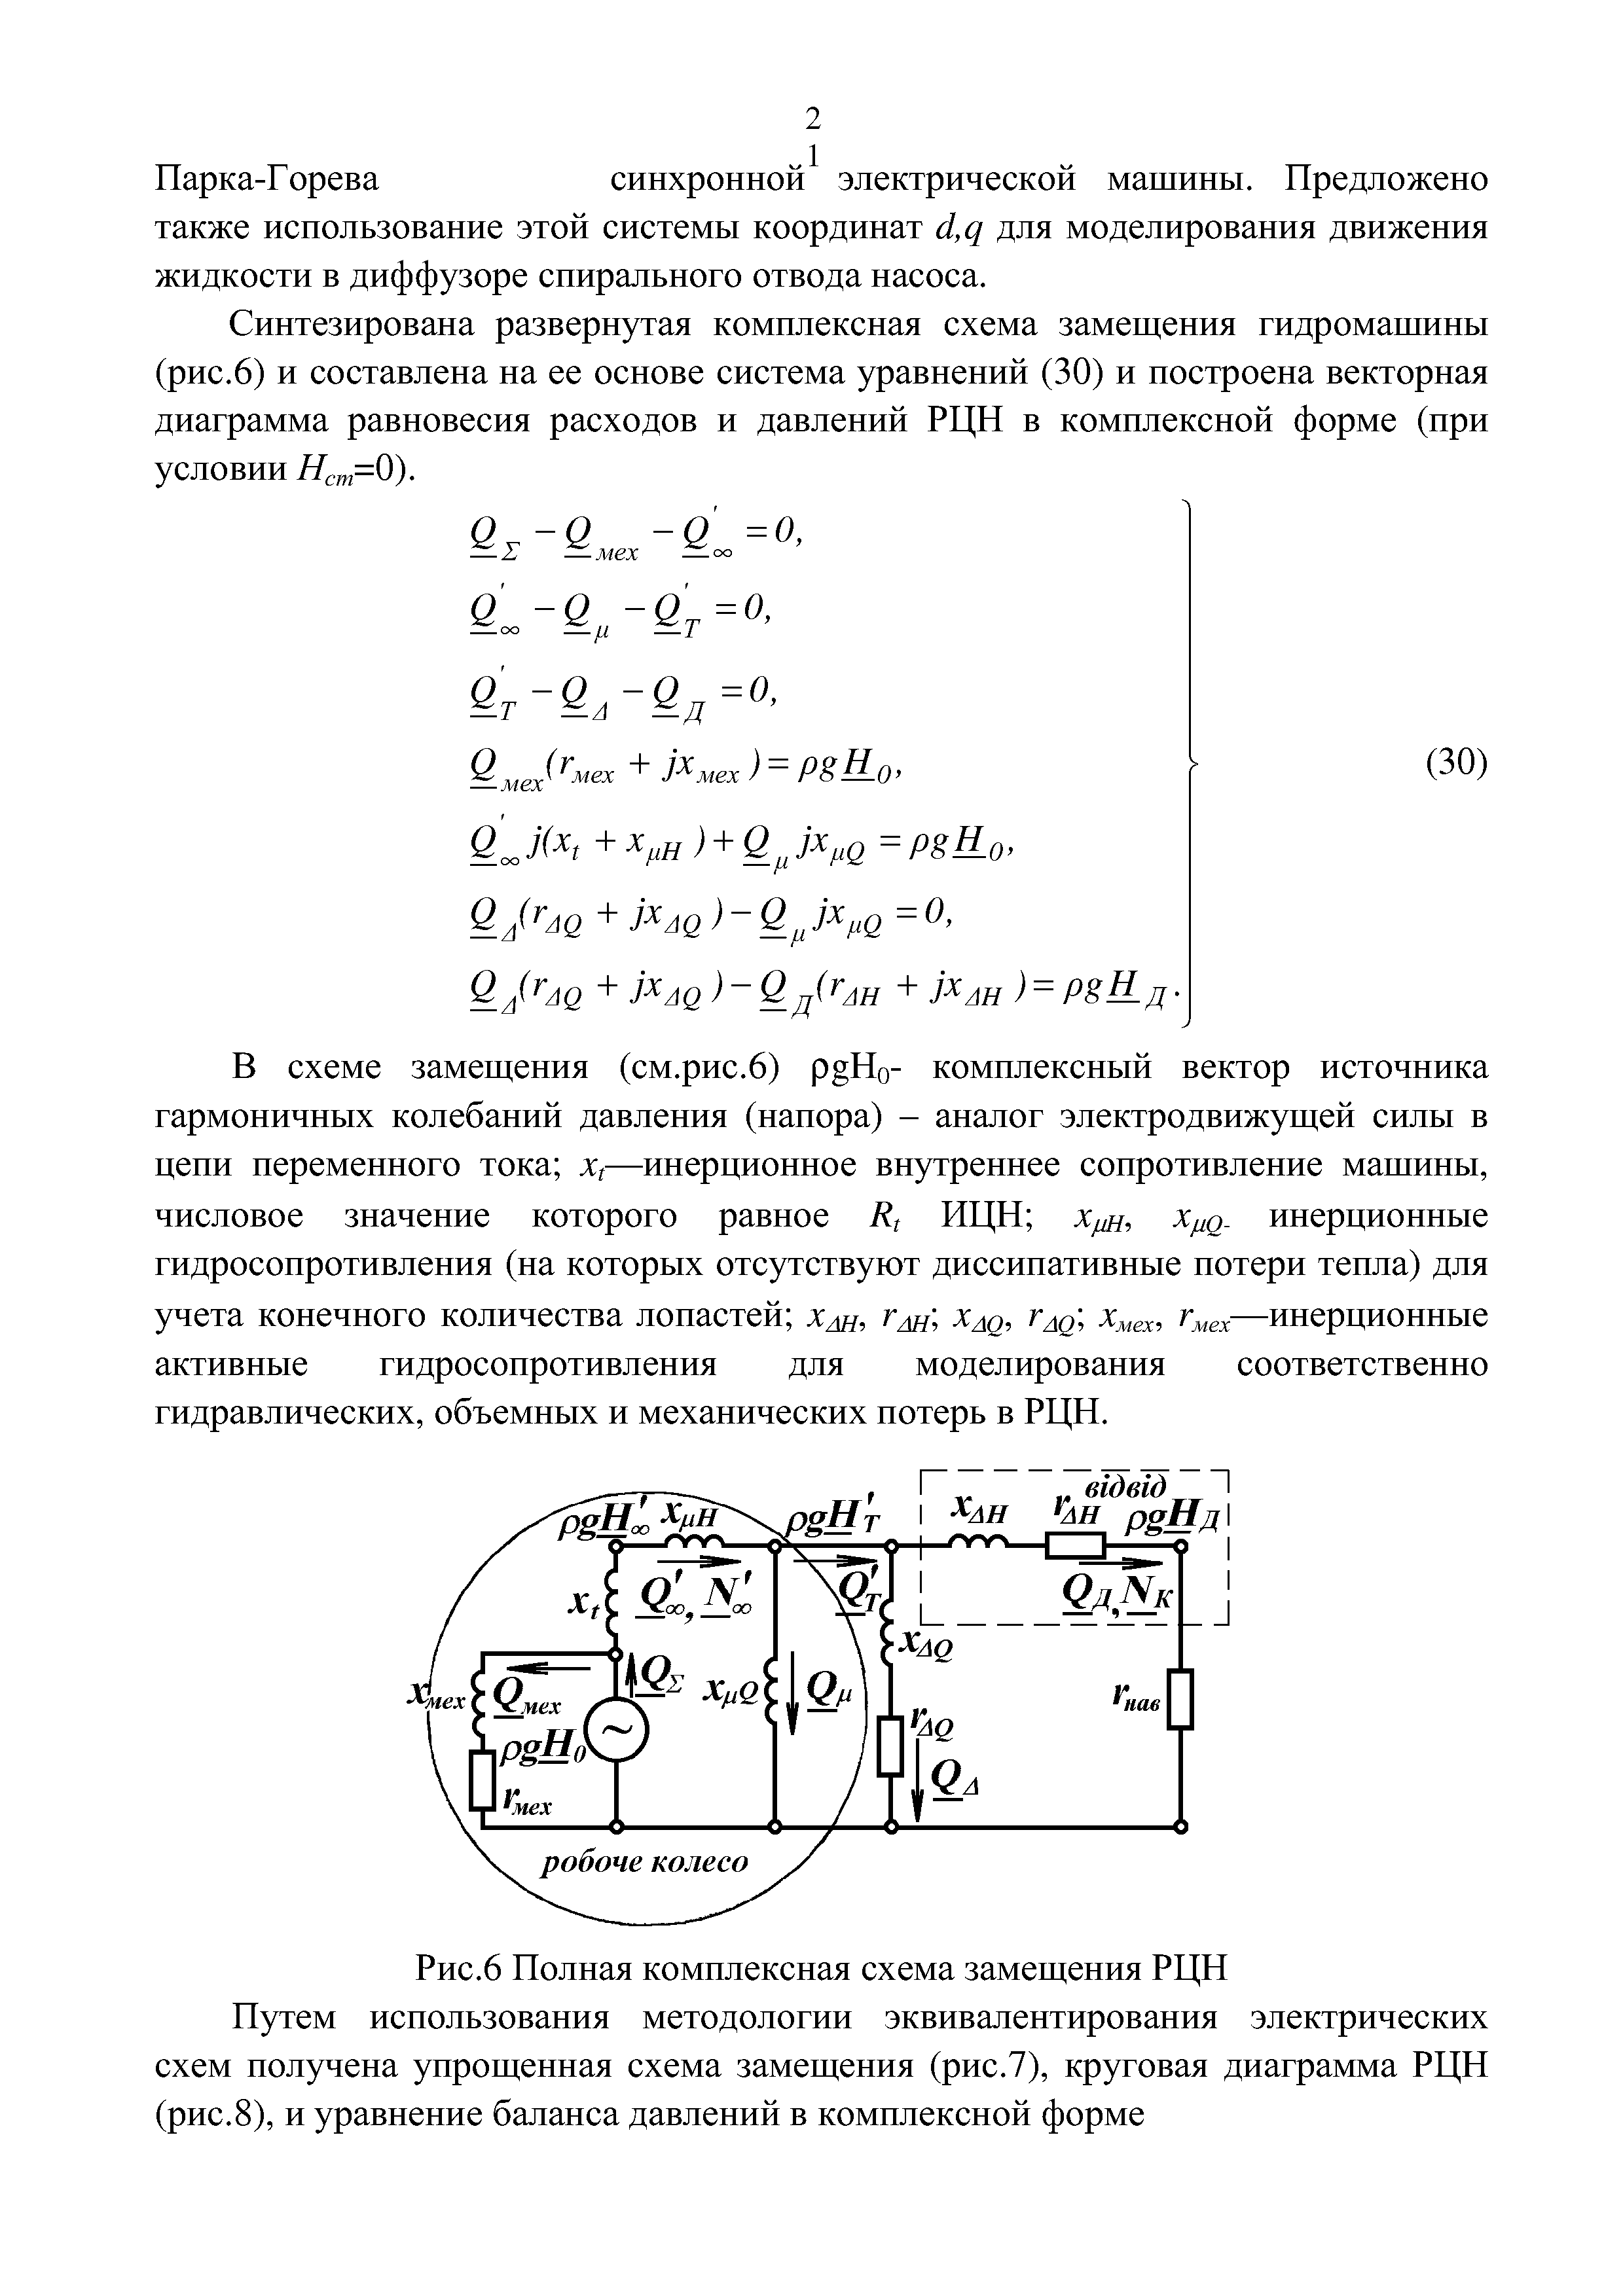 Рис.6 Полная комплексная схема замещения РЦН Путем использования методологии эквивалентирования электрических схем получена упрощенная схема замещения (рис.7), круговая диаграмма РЦН (рис.8), и уравнение баланса давлений в комплексной форме
